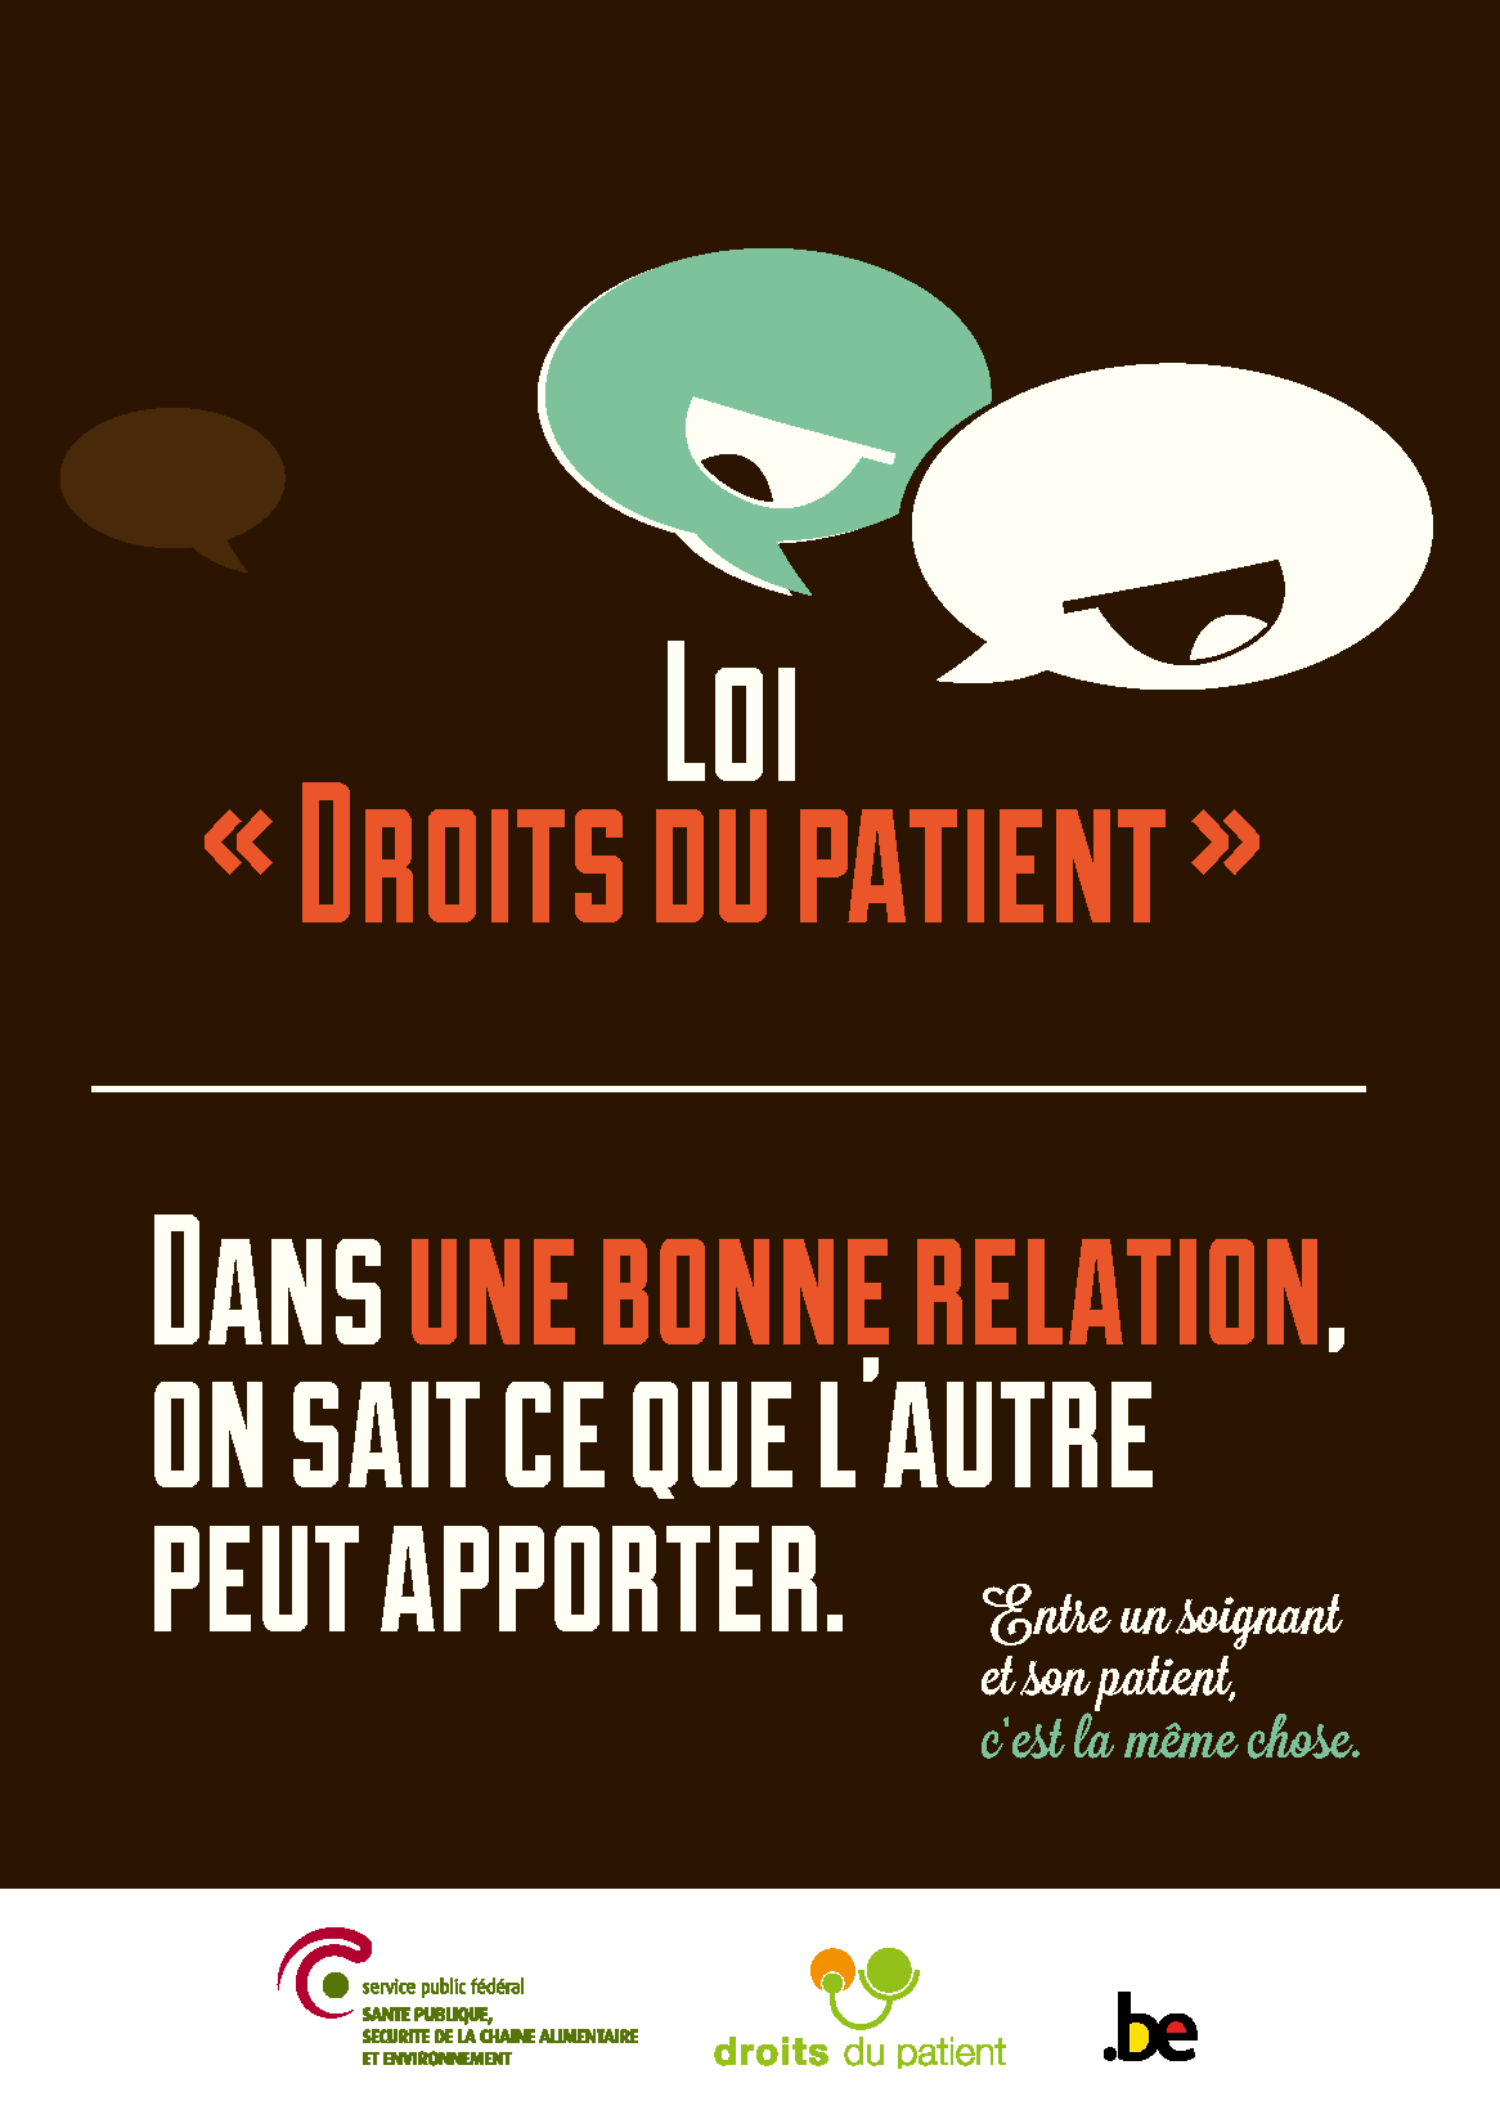 Loi « Droits du patient »